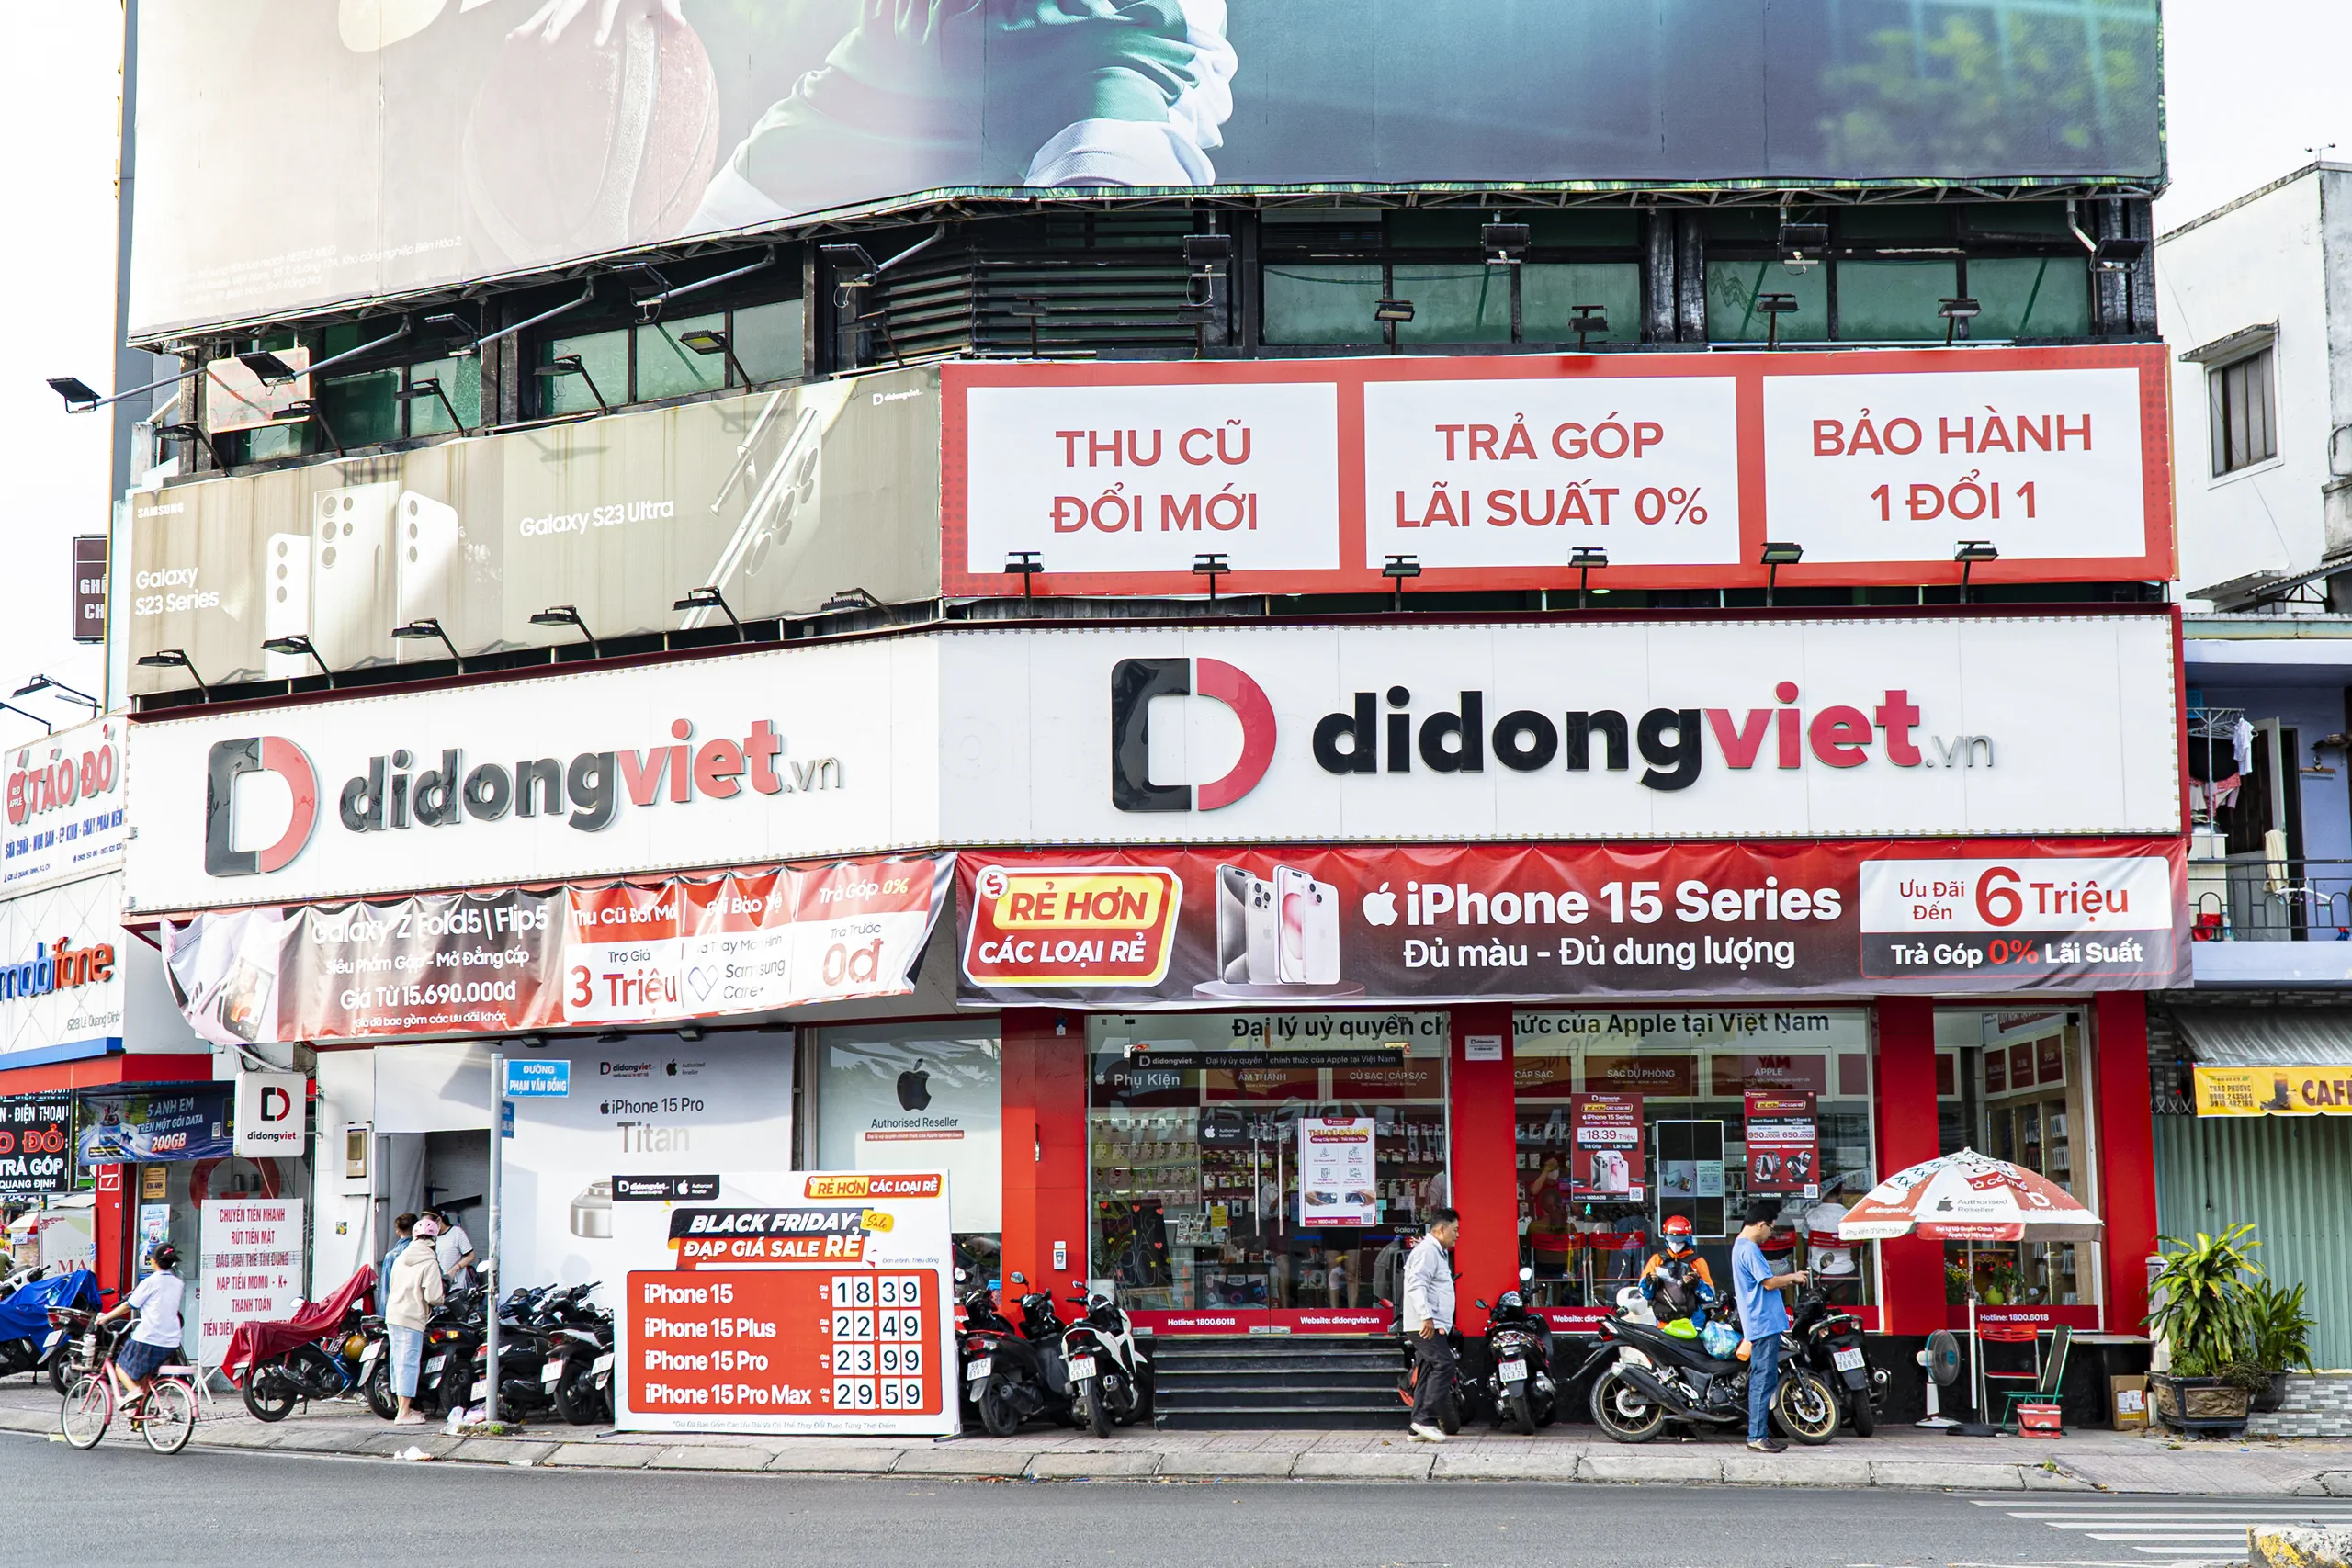 “Chỉ thở thôi", Di Động Việt cũng liên tục tăng trưởng doanh số